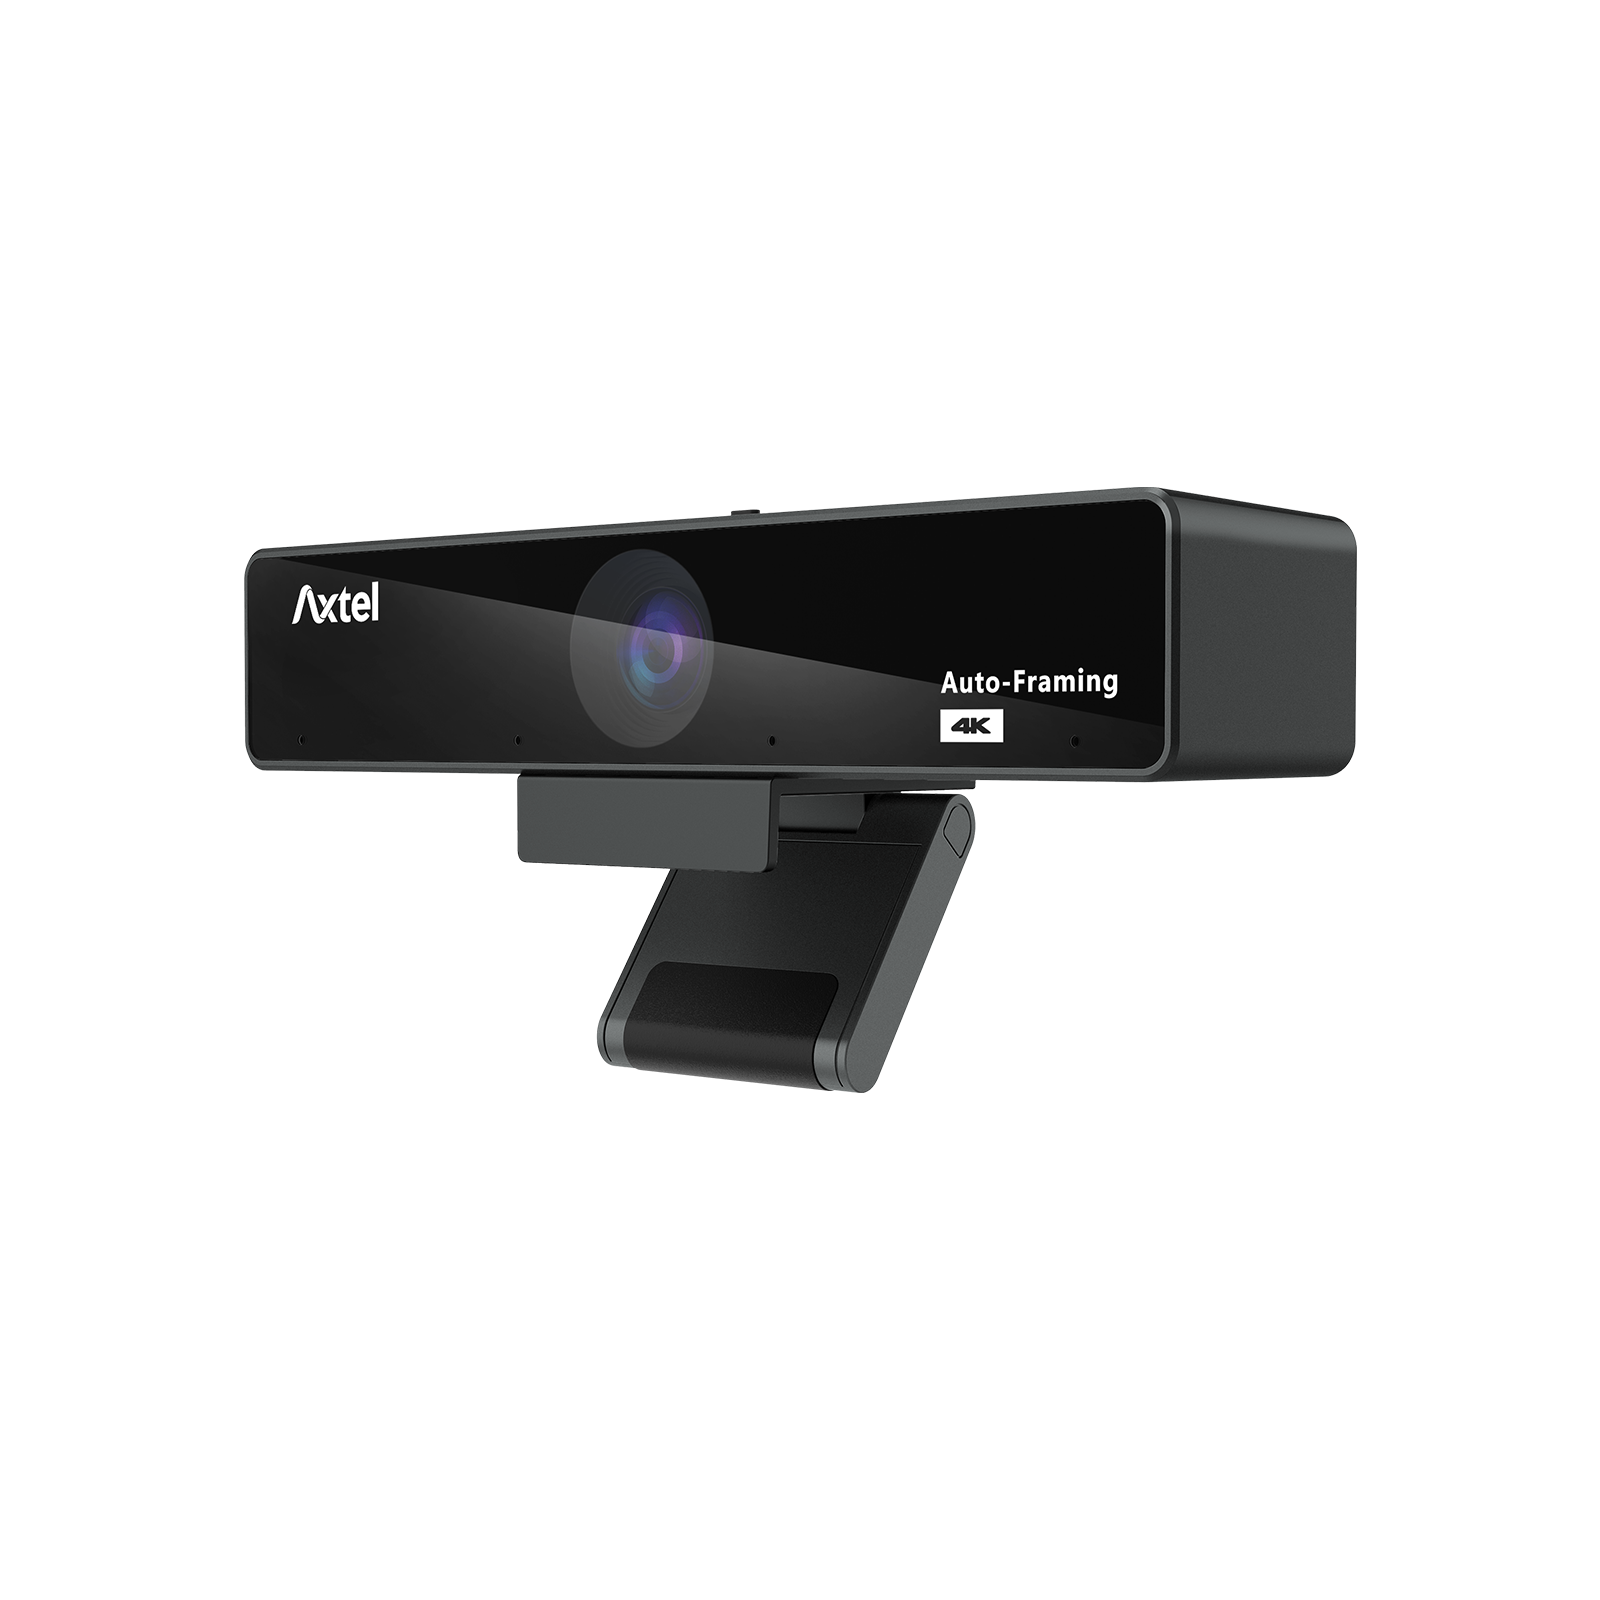 AX-4K Business Webcam